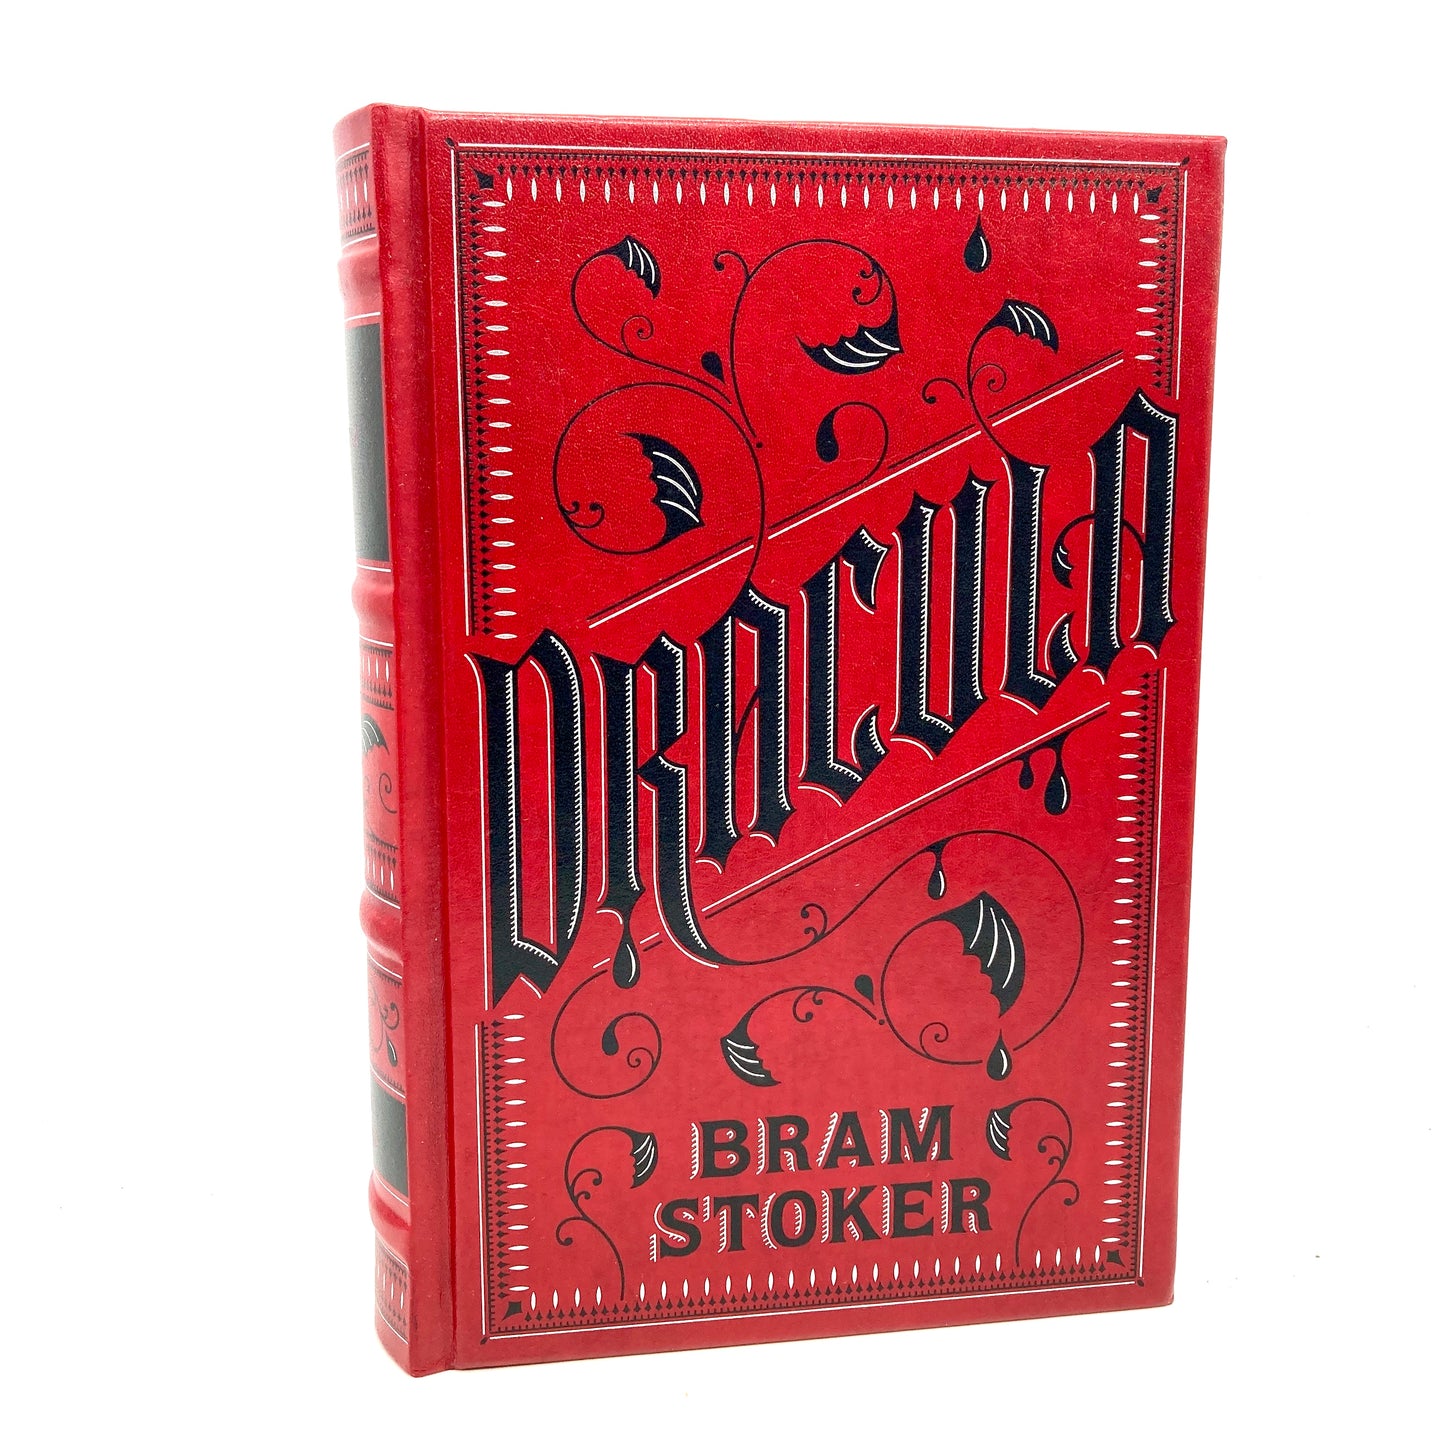 STOKER, Bram "Dracula" [Barnes & Noble, 2011]